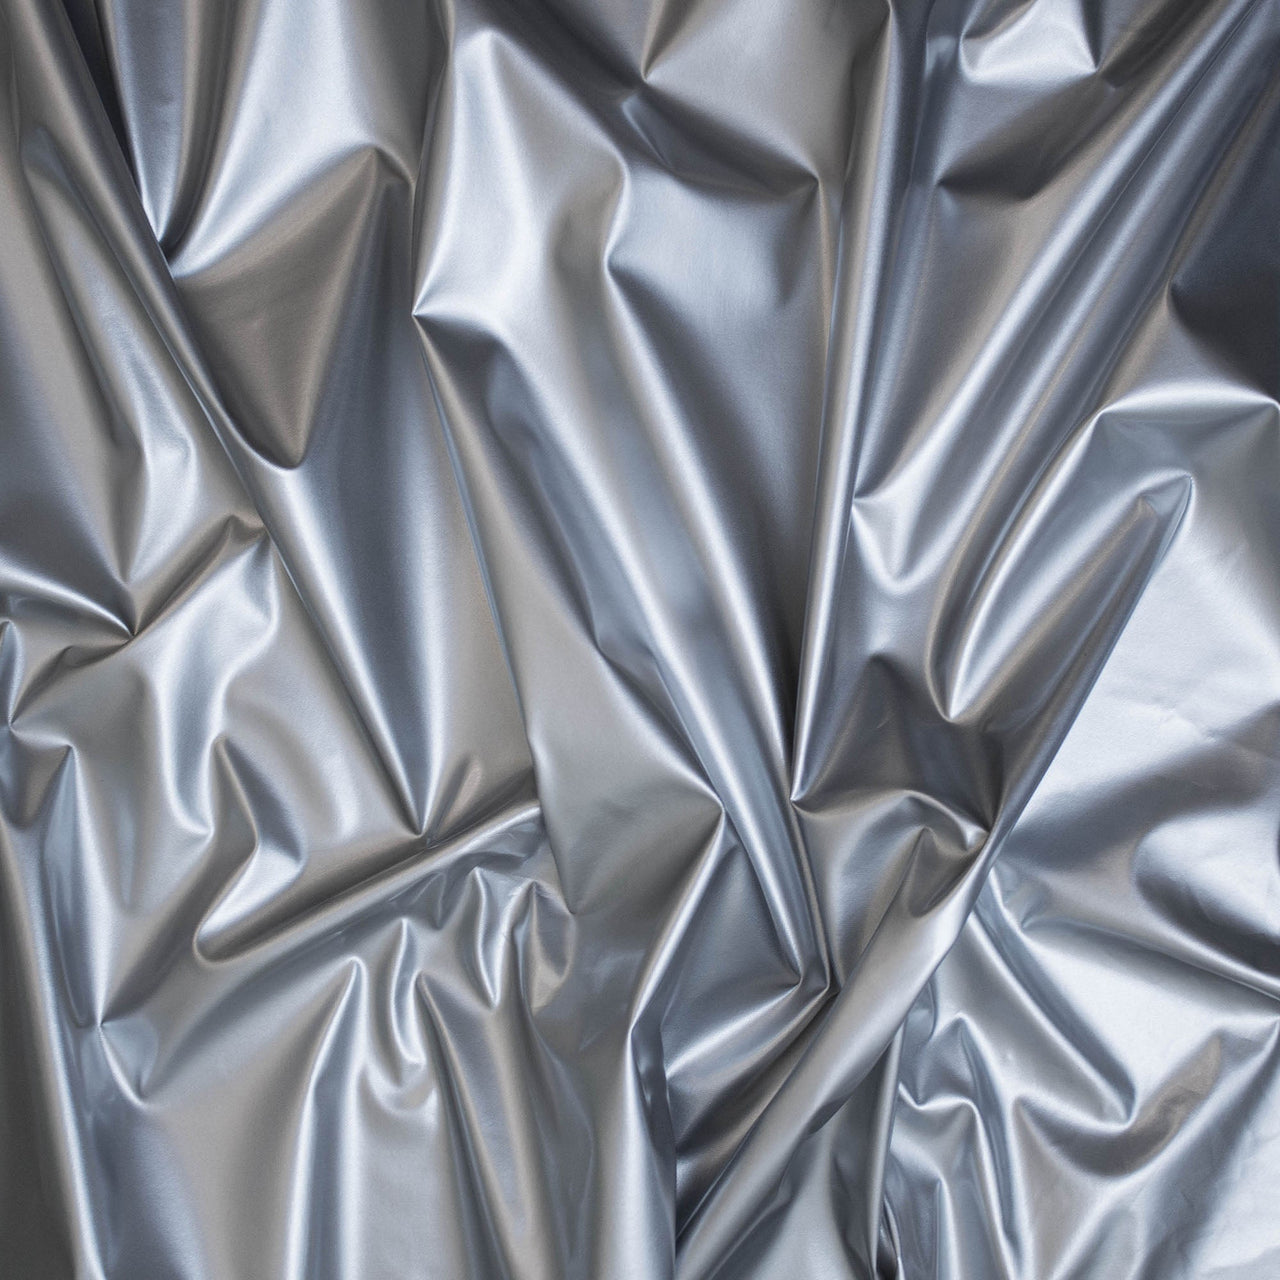 Silber glänzender PVC-Stretchstoff – 1-Wege-Naturstretch – PU-beschichtet